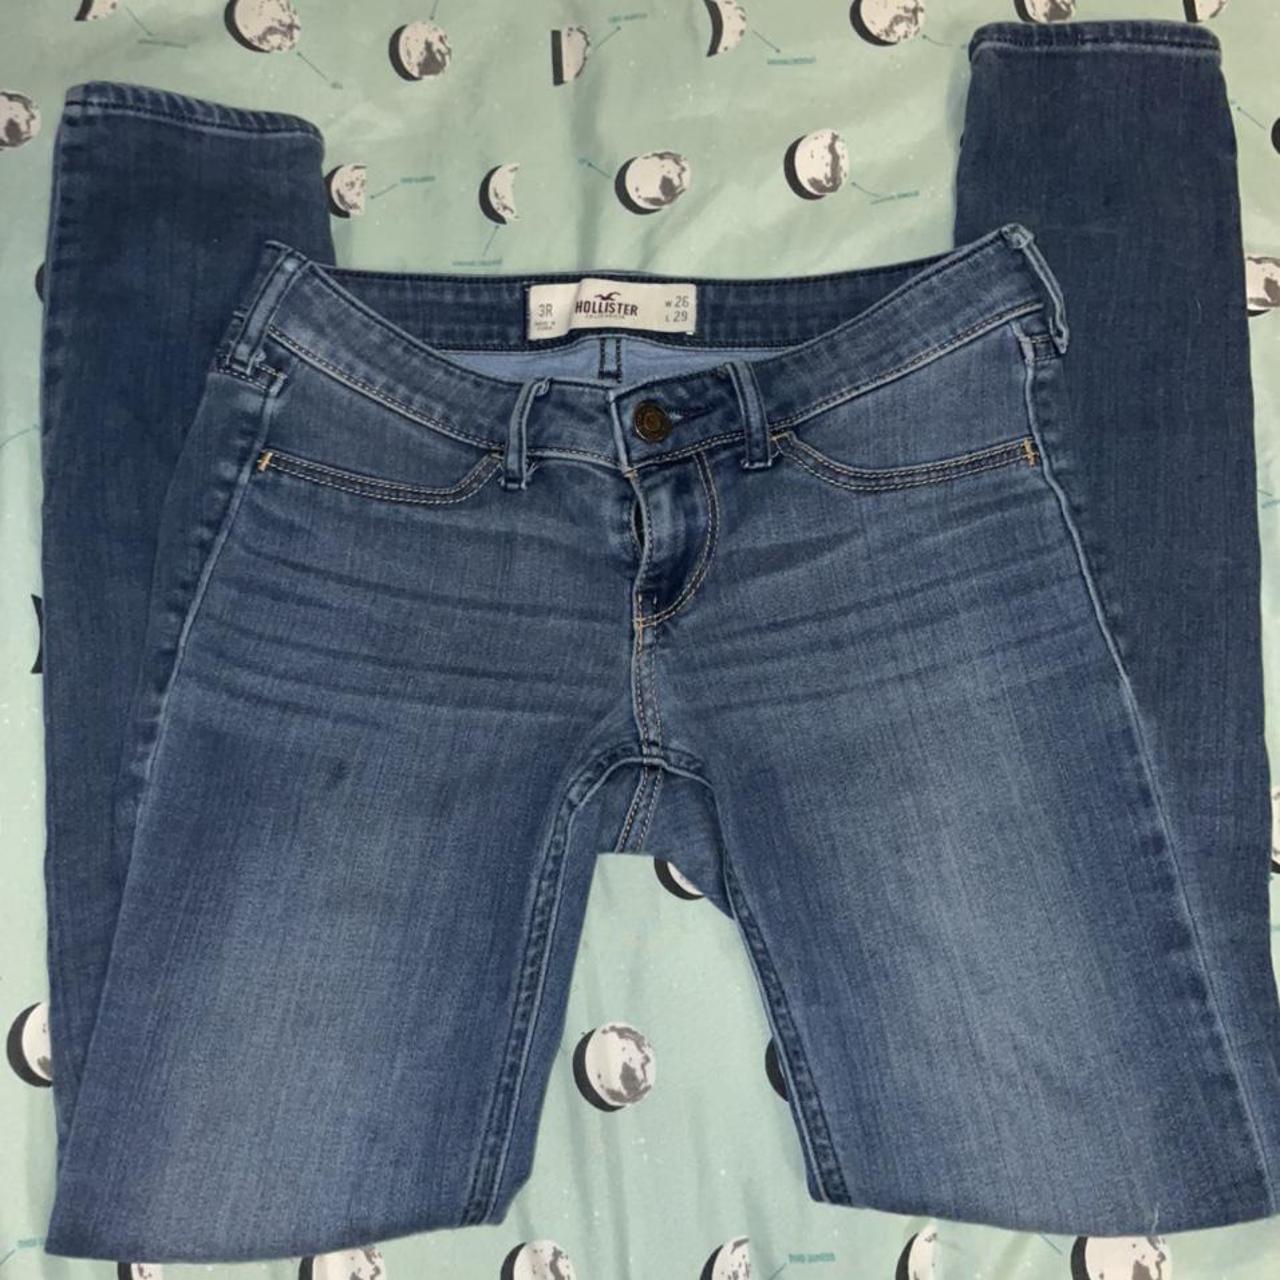 Hollister skinny jeans! 💙🦅 #Hollister #jeggings - Depop